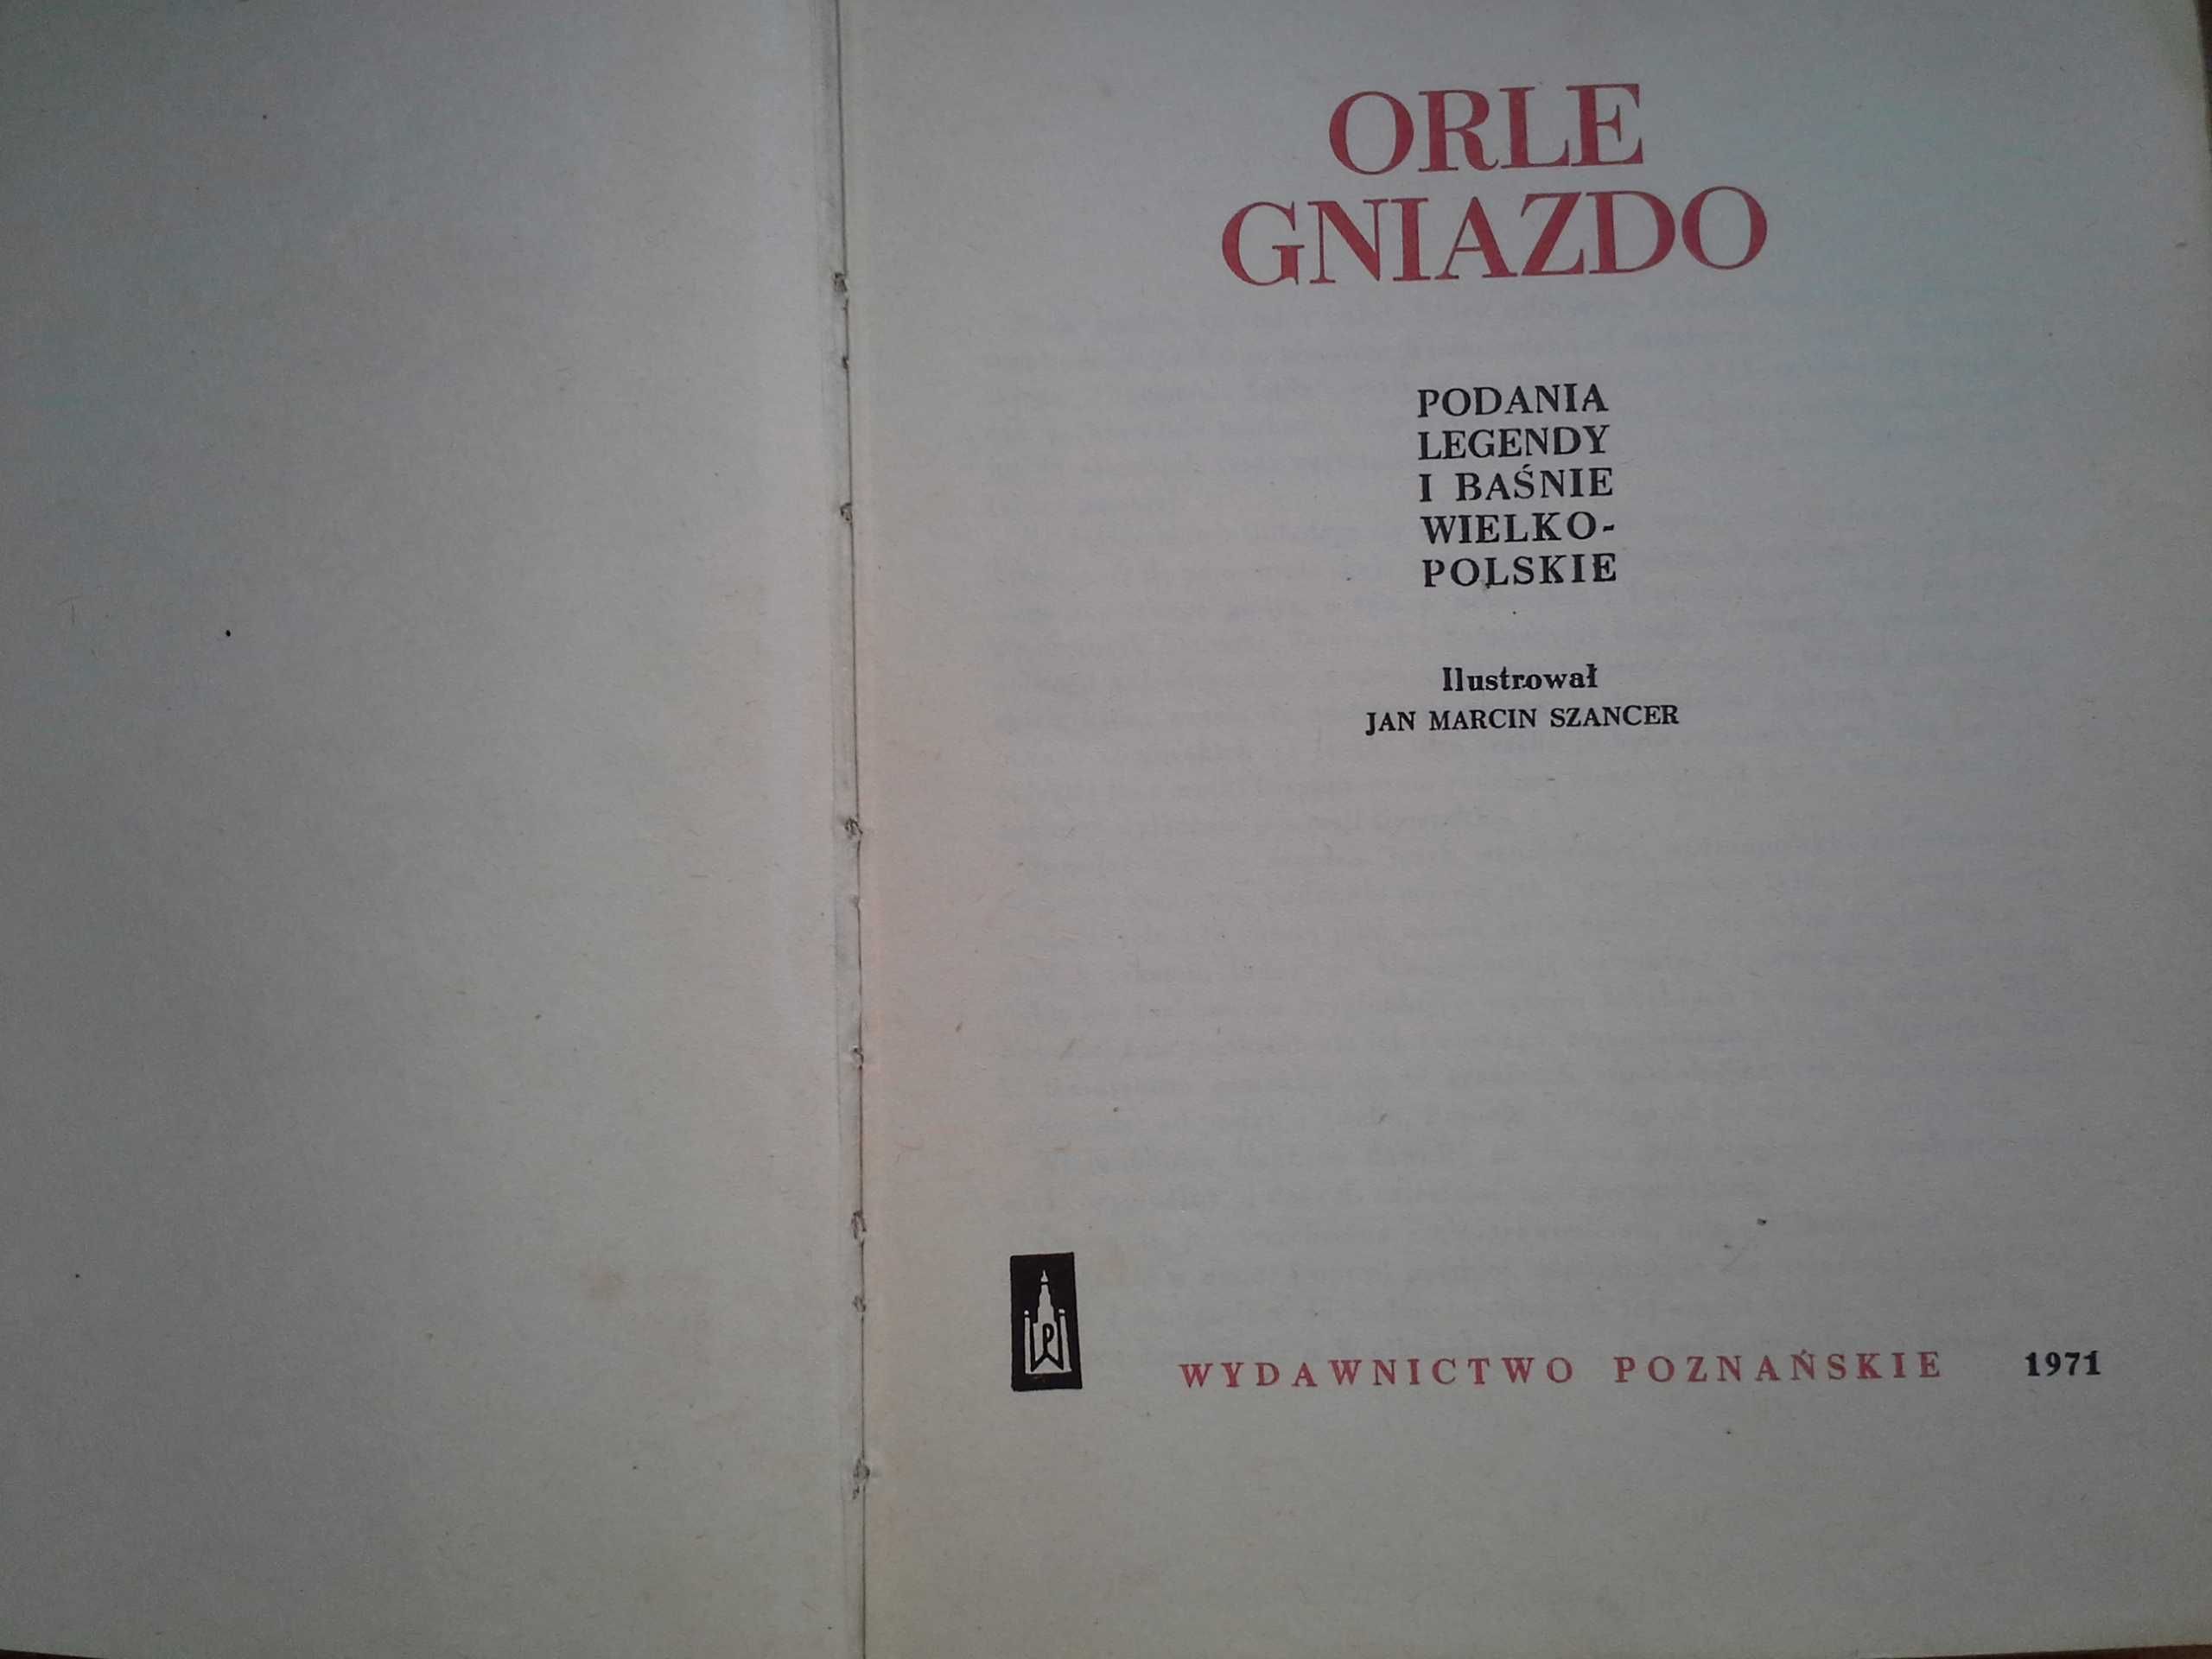 Orle Gniazdo, Stanisław Świrko, Ilustracje J.M. Szancer, 1971r.